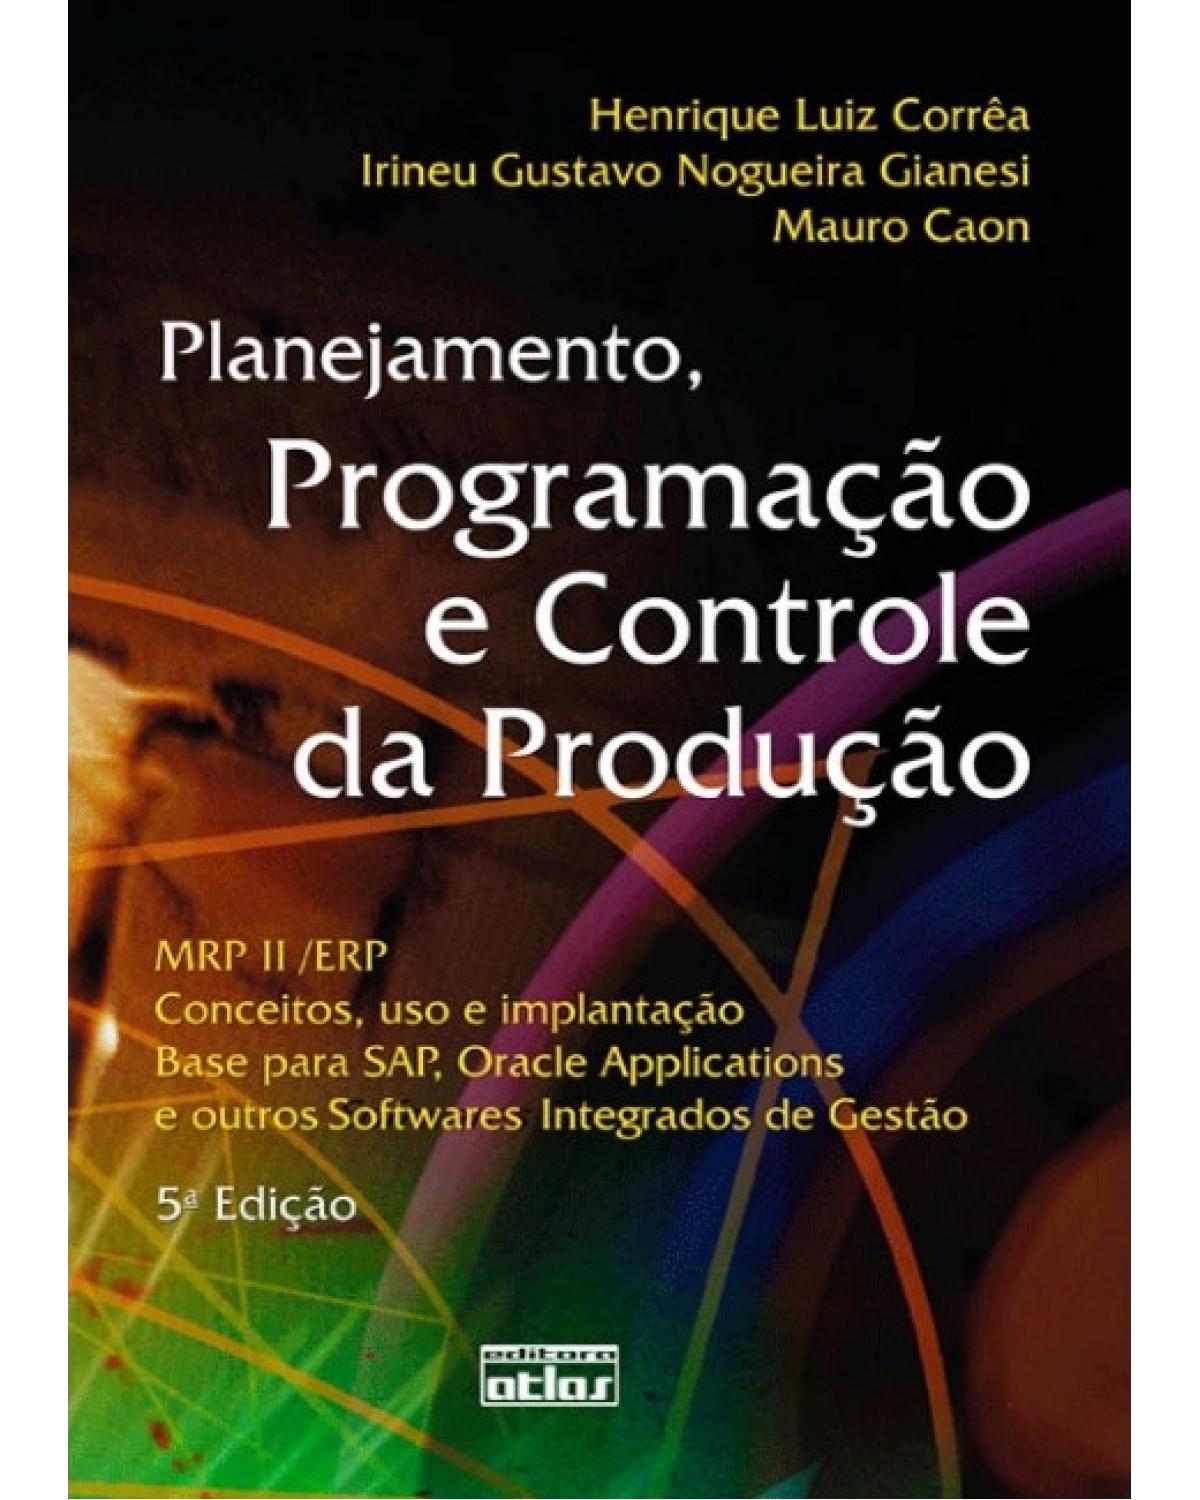 Planejamento, programação e controle da produção - MRP II/ERP: Conceitos, uso e implantação, base para SAP, Oracle Applications e outros softwares integrados de gestão - 5ª Edição | 2007